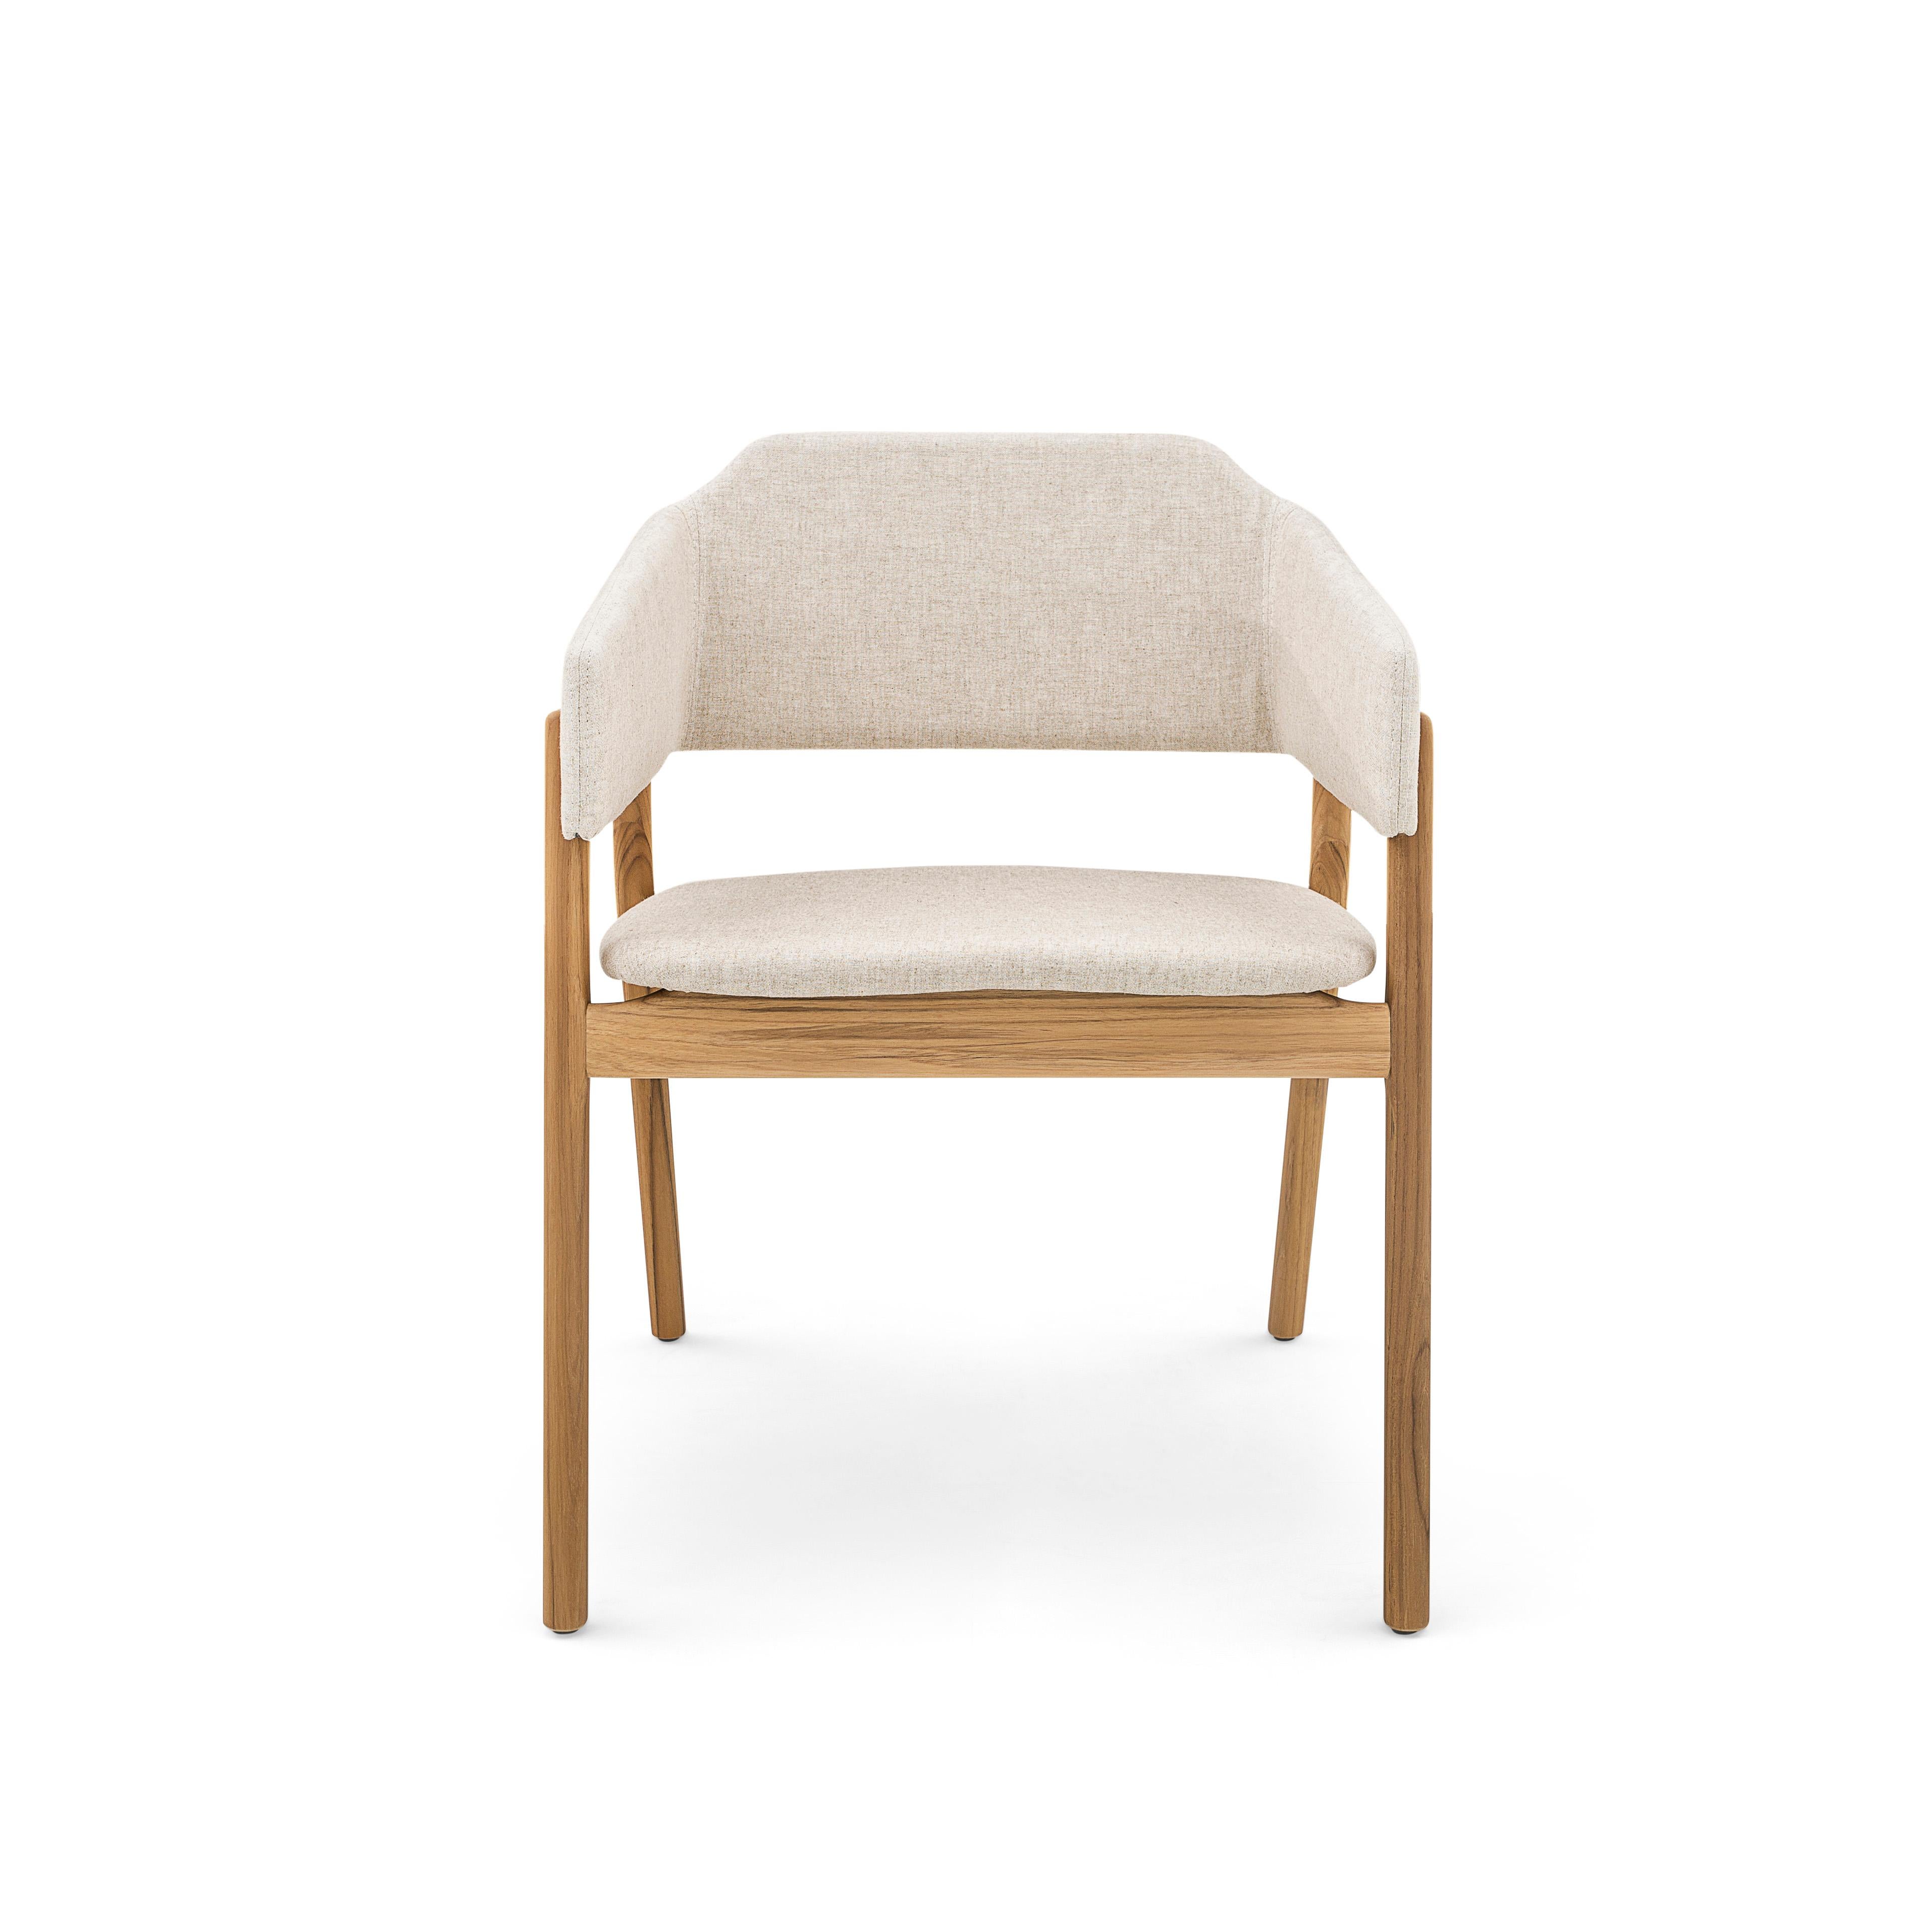 Notre équipe Uultis a créé cette magnifique chaise de salle à manger Stuzi pour décorer votre belle table de salle à manger avec un tissu oatmeal et une finition en bois de teck. Cette chaise a un beau design simple mais élégant qui va parfaitement